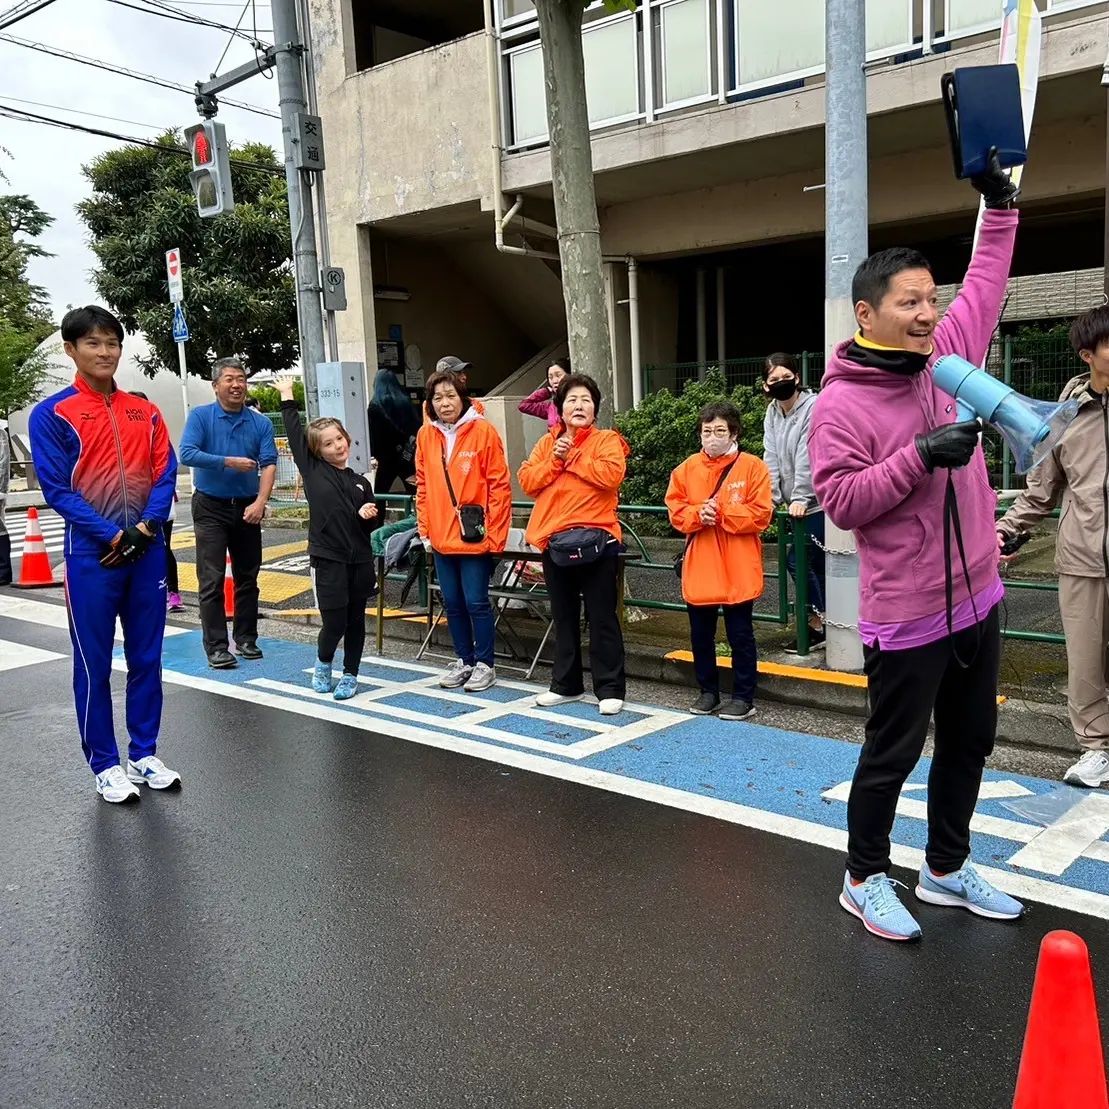 きたしぶランランフェスタ　　　　渋谷区幡ヶ谷の七号通りを封鎖して行われた　　イベント。　　東京オリンピック競歩日本代表の丸尾知司選手と一緒に参加者がRun(歩く)しました。　　　　オリンピアンともなると競歩で小学生が走るよりも早いくらい。　　最後は小学生と勝負！！　　30メートルのタイムアタックで6秒5。　　全力で走った小学生の女の子が6秒21で勝ちました〜　　　　丸尾選手、パリオリンピック予選頑張ってください～！！　　#渋谷 #丸尾知司 #きたしぶ #七号通り #競歩 #幡ヶ谷 #ボランティア #道路 #ナレーター #MC #バリトンボイス #ナレーション #Nスタナレーター #低音ボイス #Nスタ #tbs #声のプロフェショナル #古田優児 #DJ古田 #言霊 #コトダマ #kotodama #フリーアナウンサー #スポーツDJ #イケボ #古田